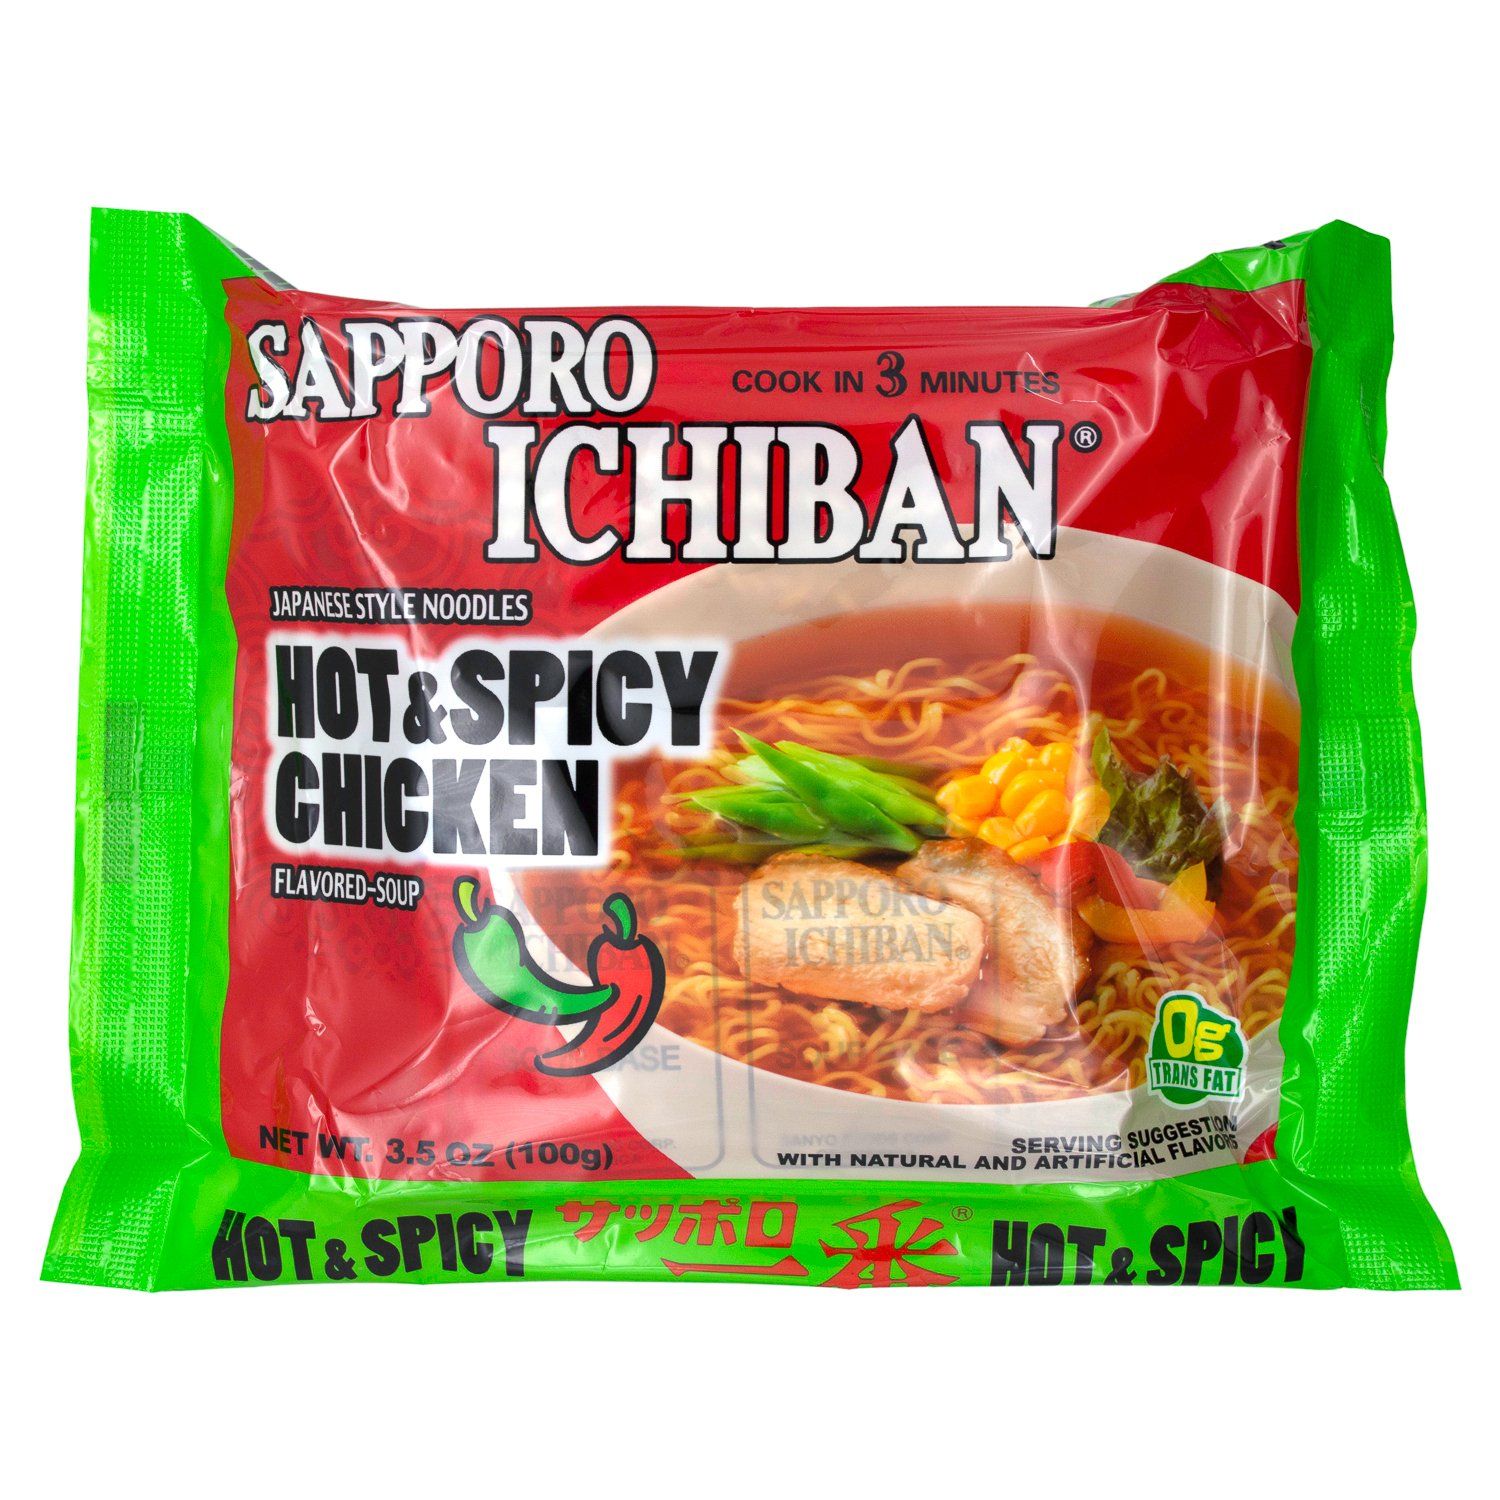 Sapporo Ichiban Japanese Style Noodles Sapporo Ichiban Hot & Spicy Chicken 3.5 Oz-24 Count 